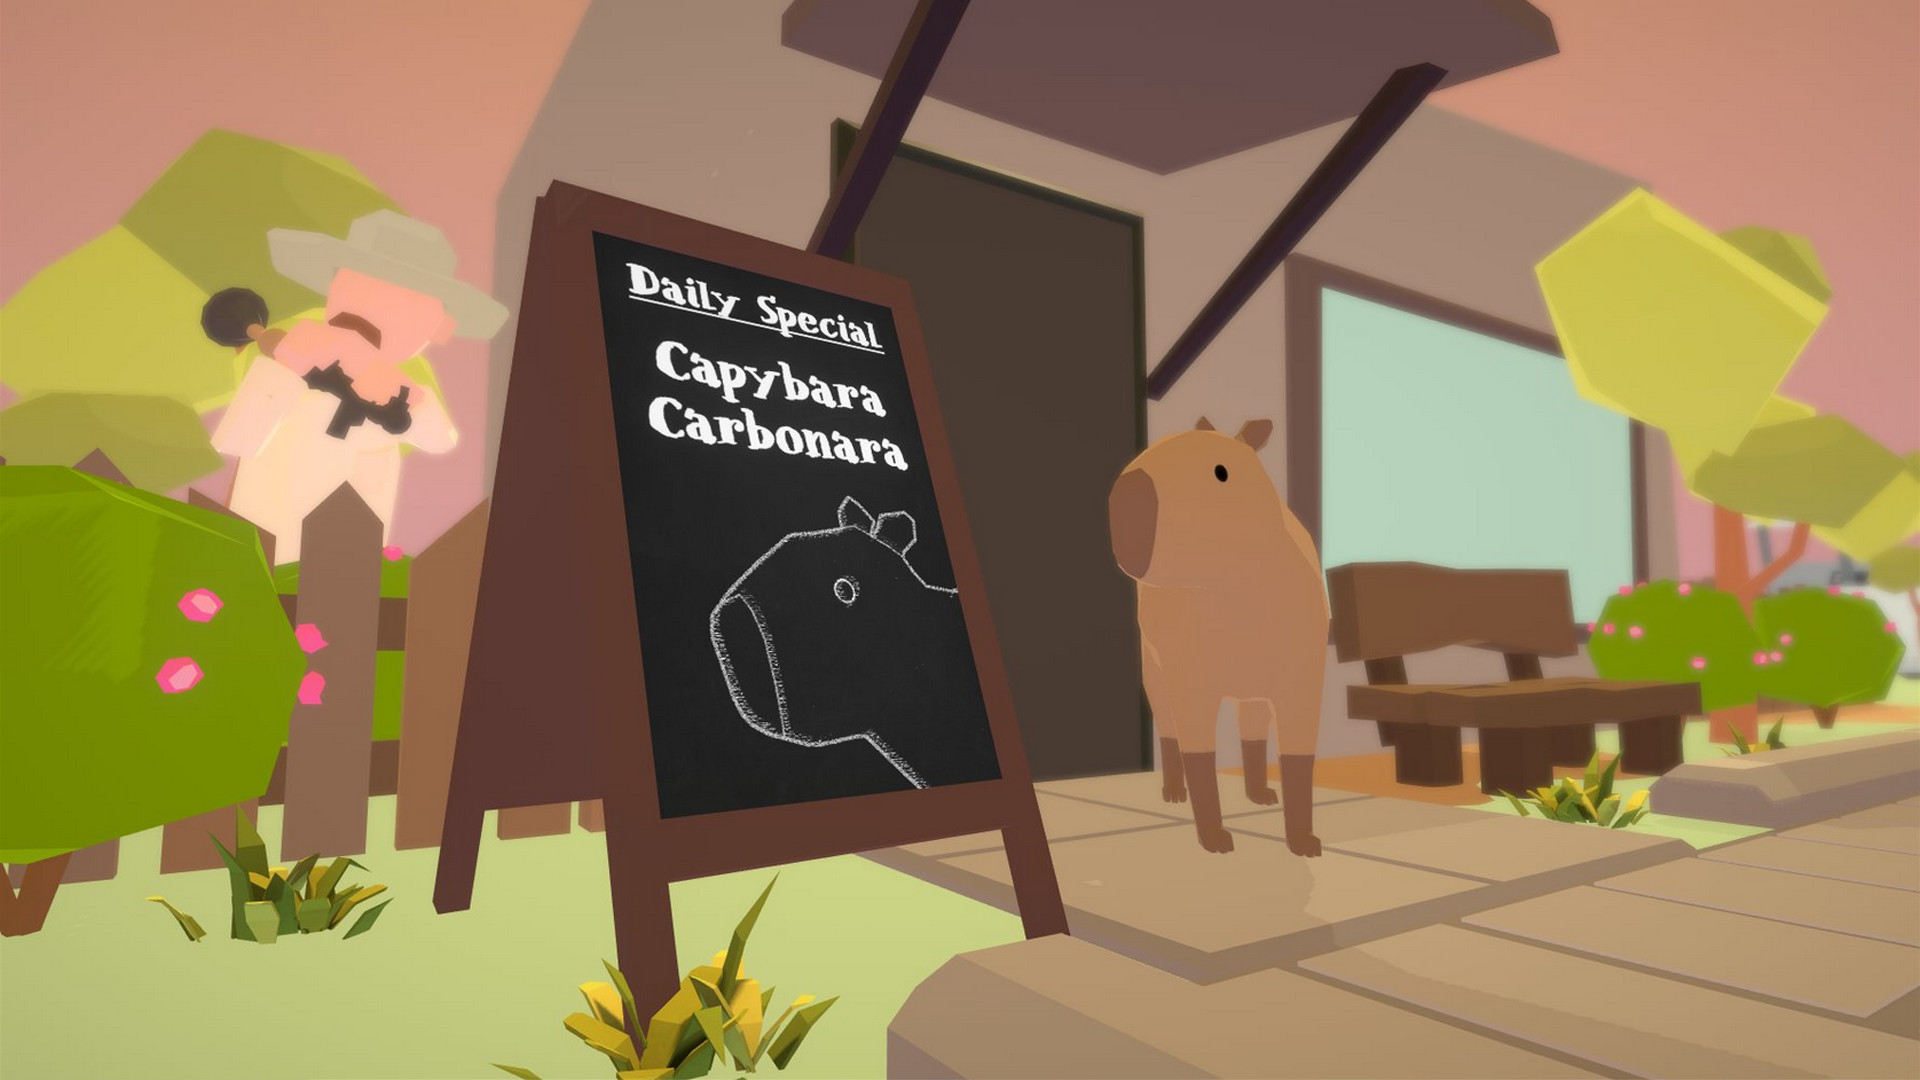 Гонки на капибарах настольная игра. Капибара игра. Капибара карбонара. Capybara Rush игра. Капибара арт игры.